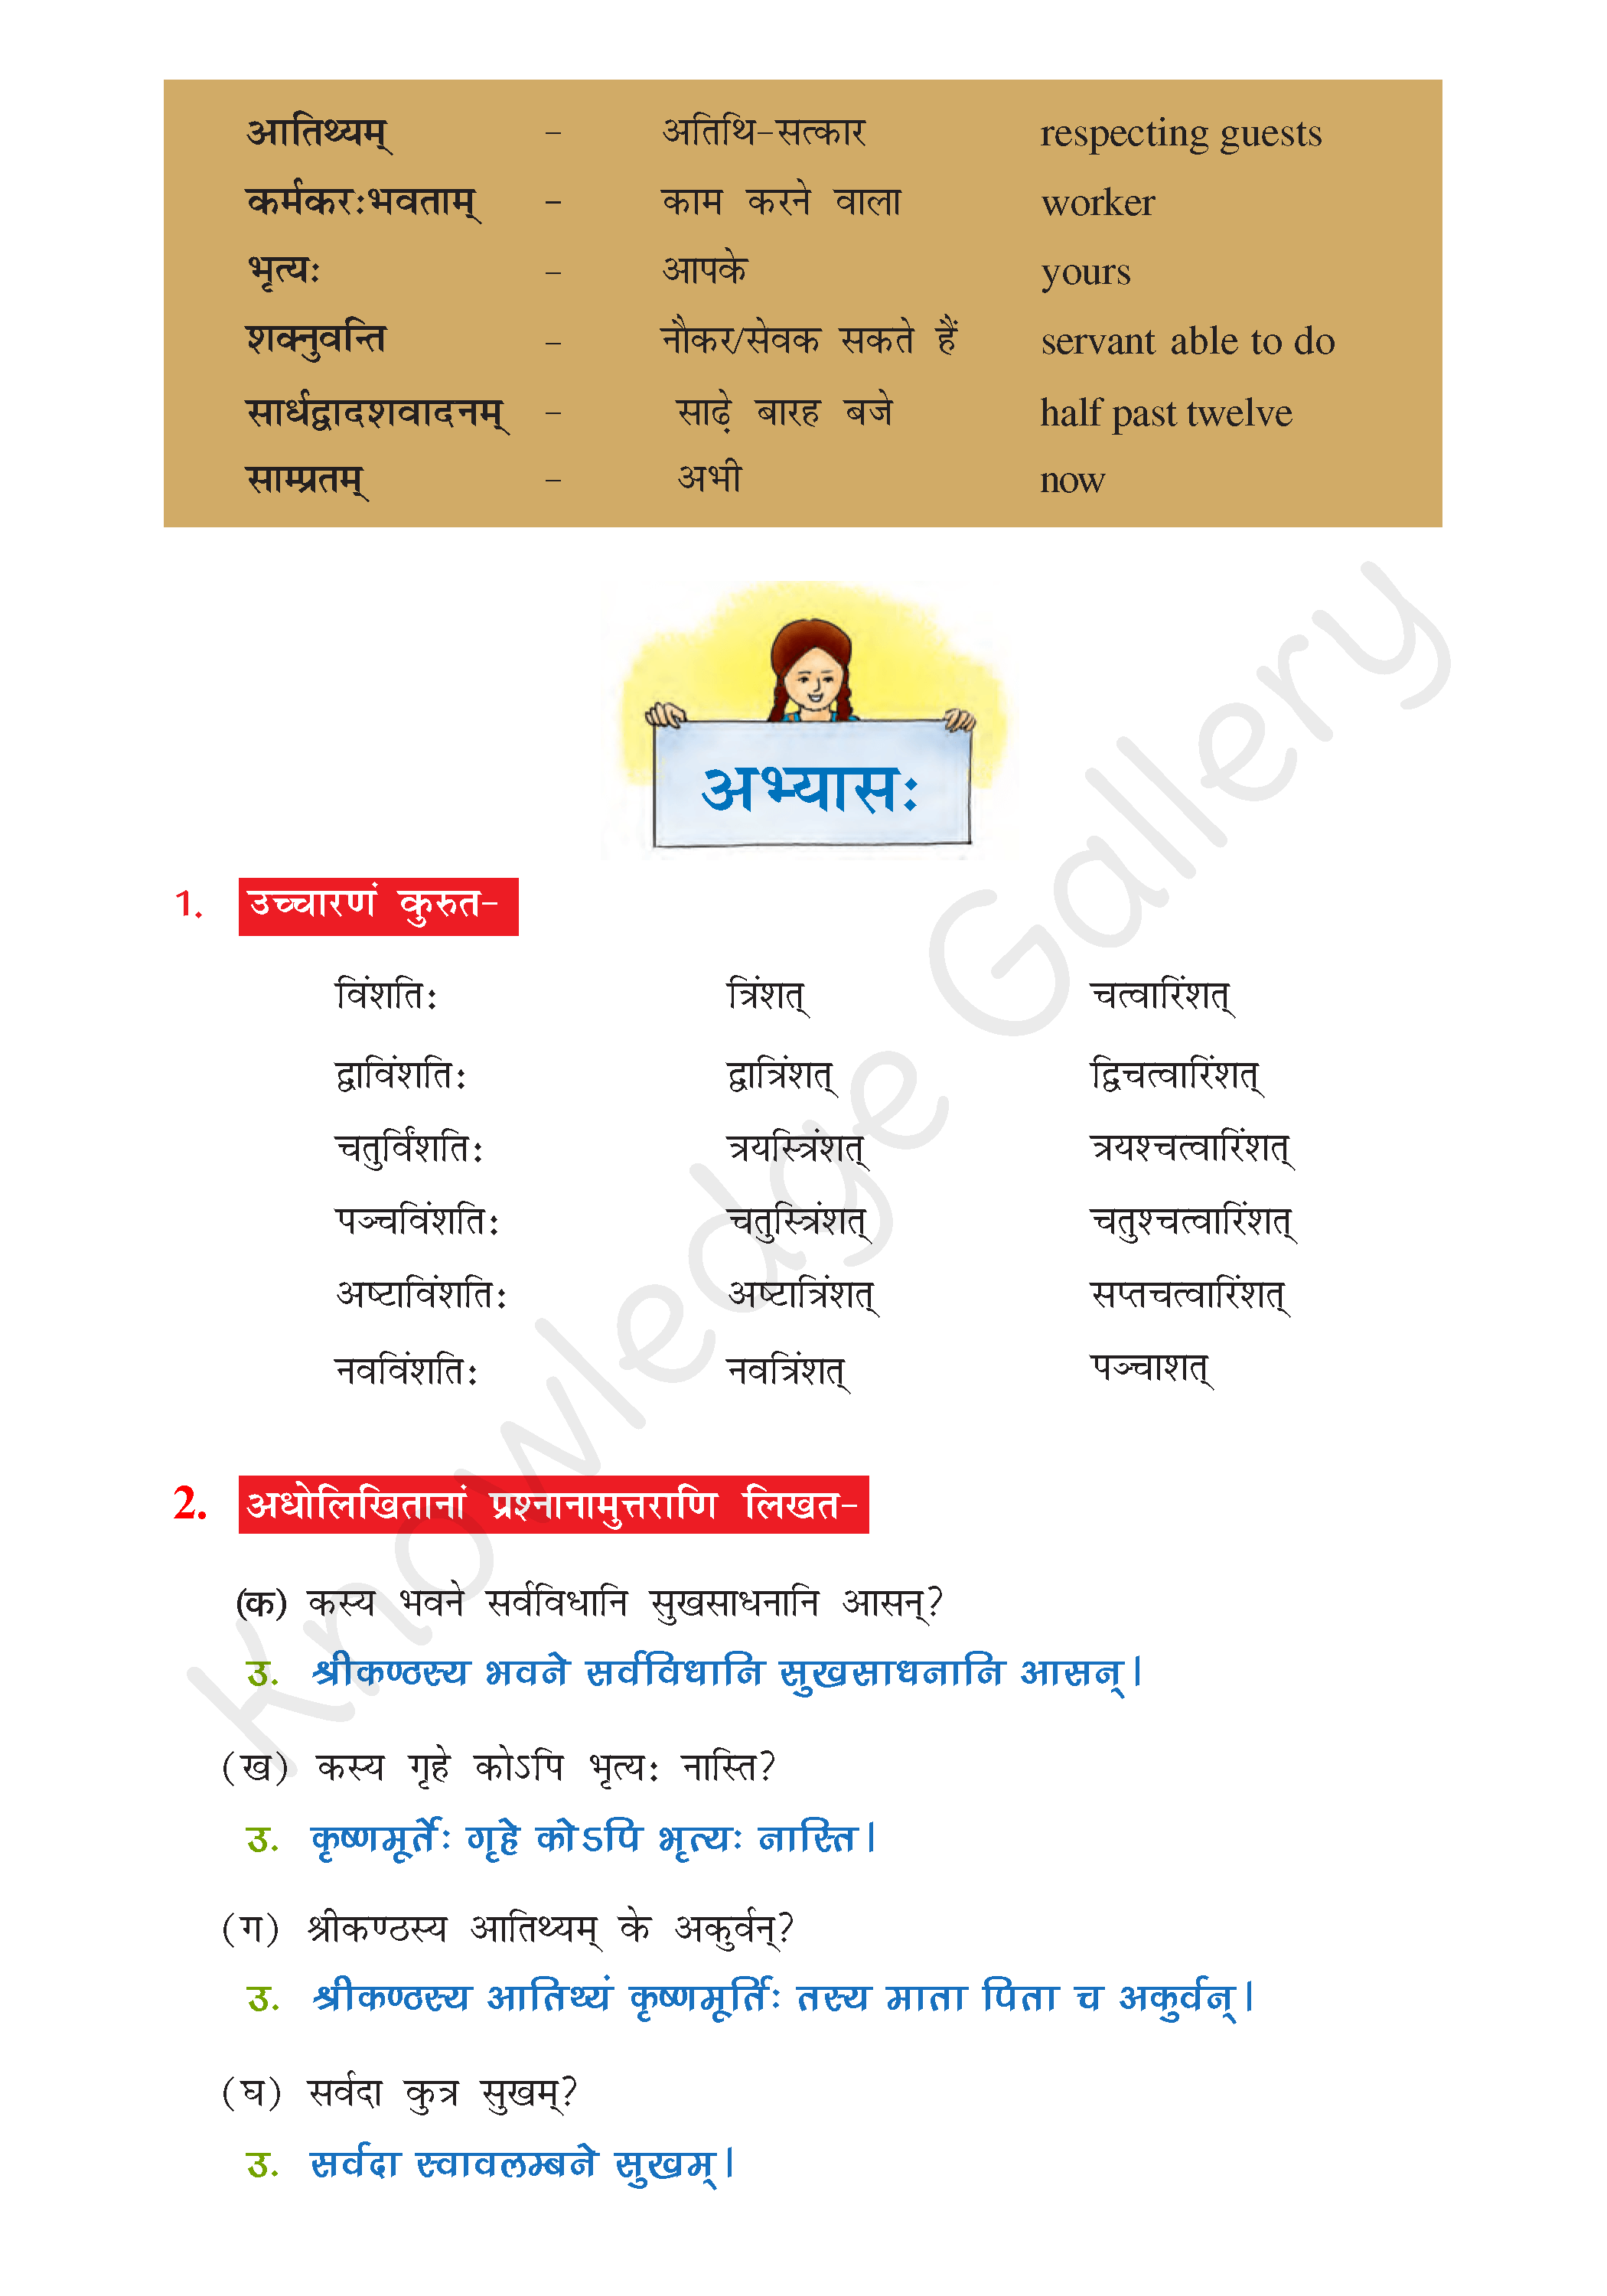 NCERT Solution For Class 7 Sanskrit Chapter 3 part 3